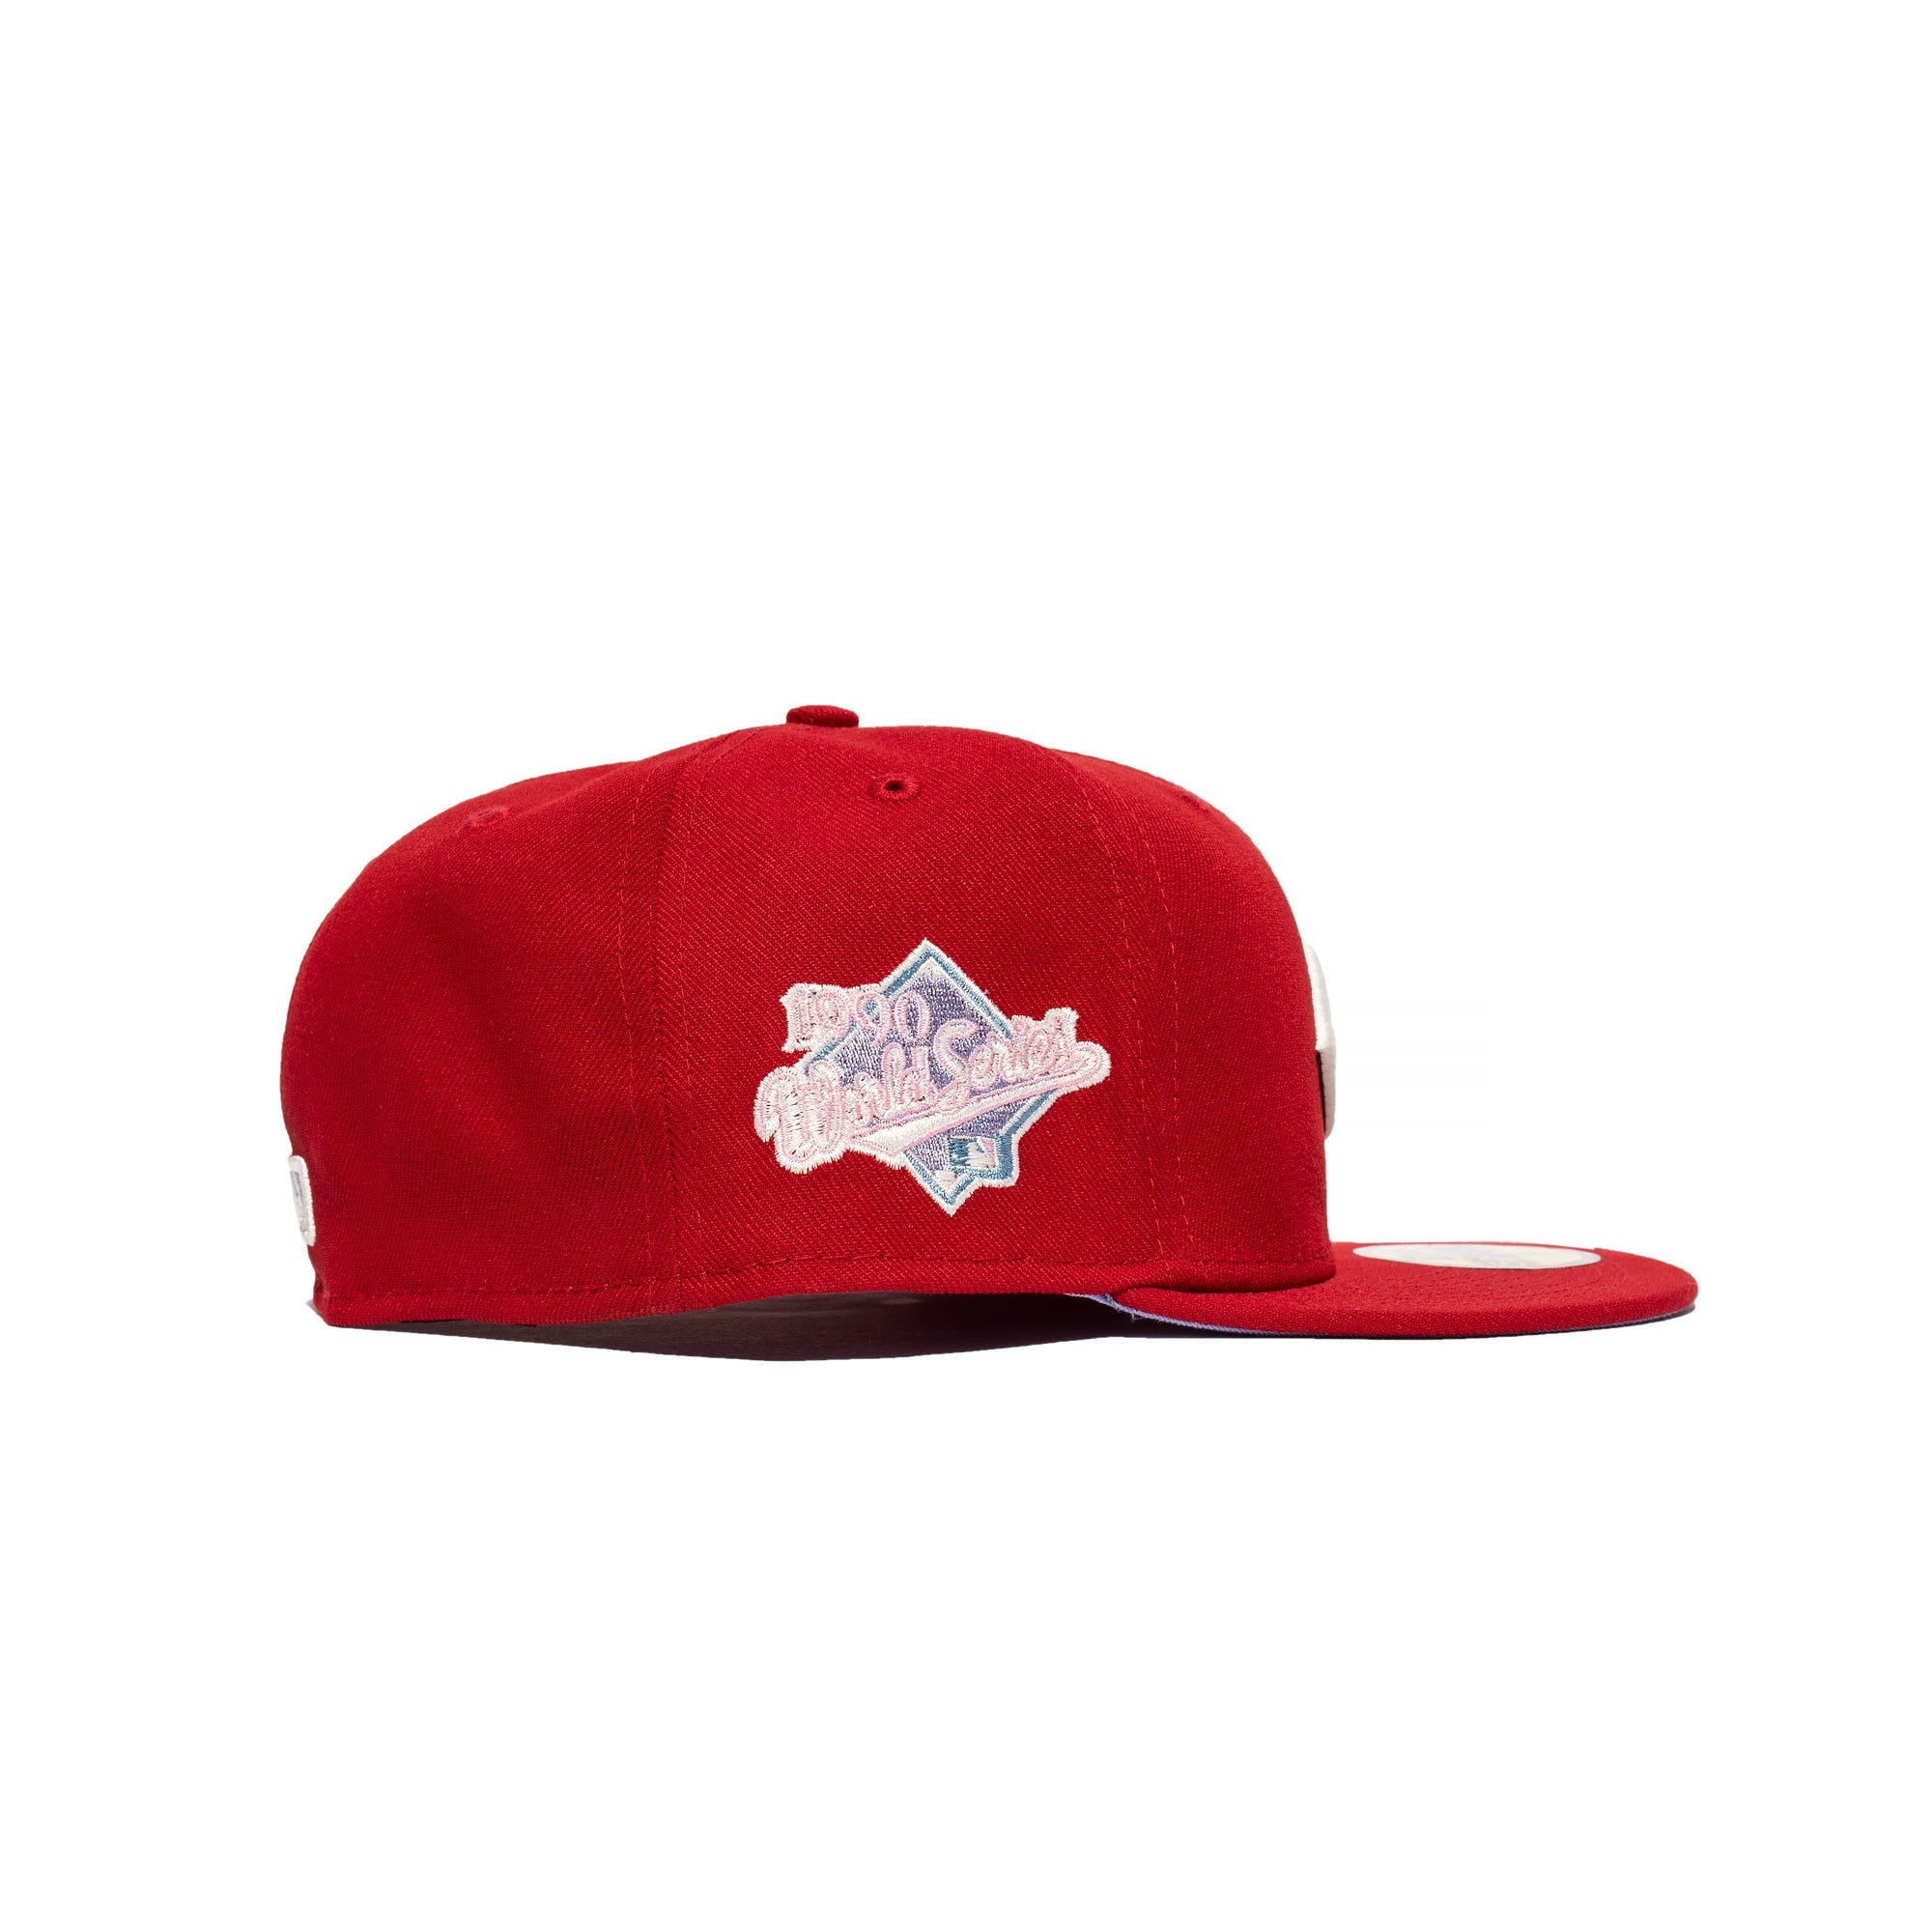 New Era Pop Sweat 59FIFTY Cincinnati Reds Fitted Hat